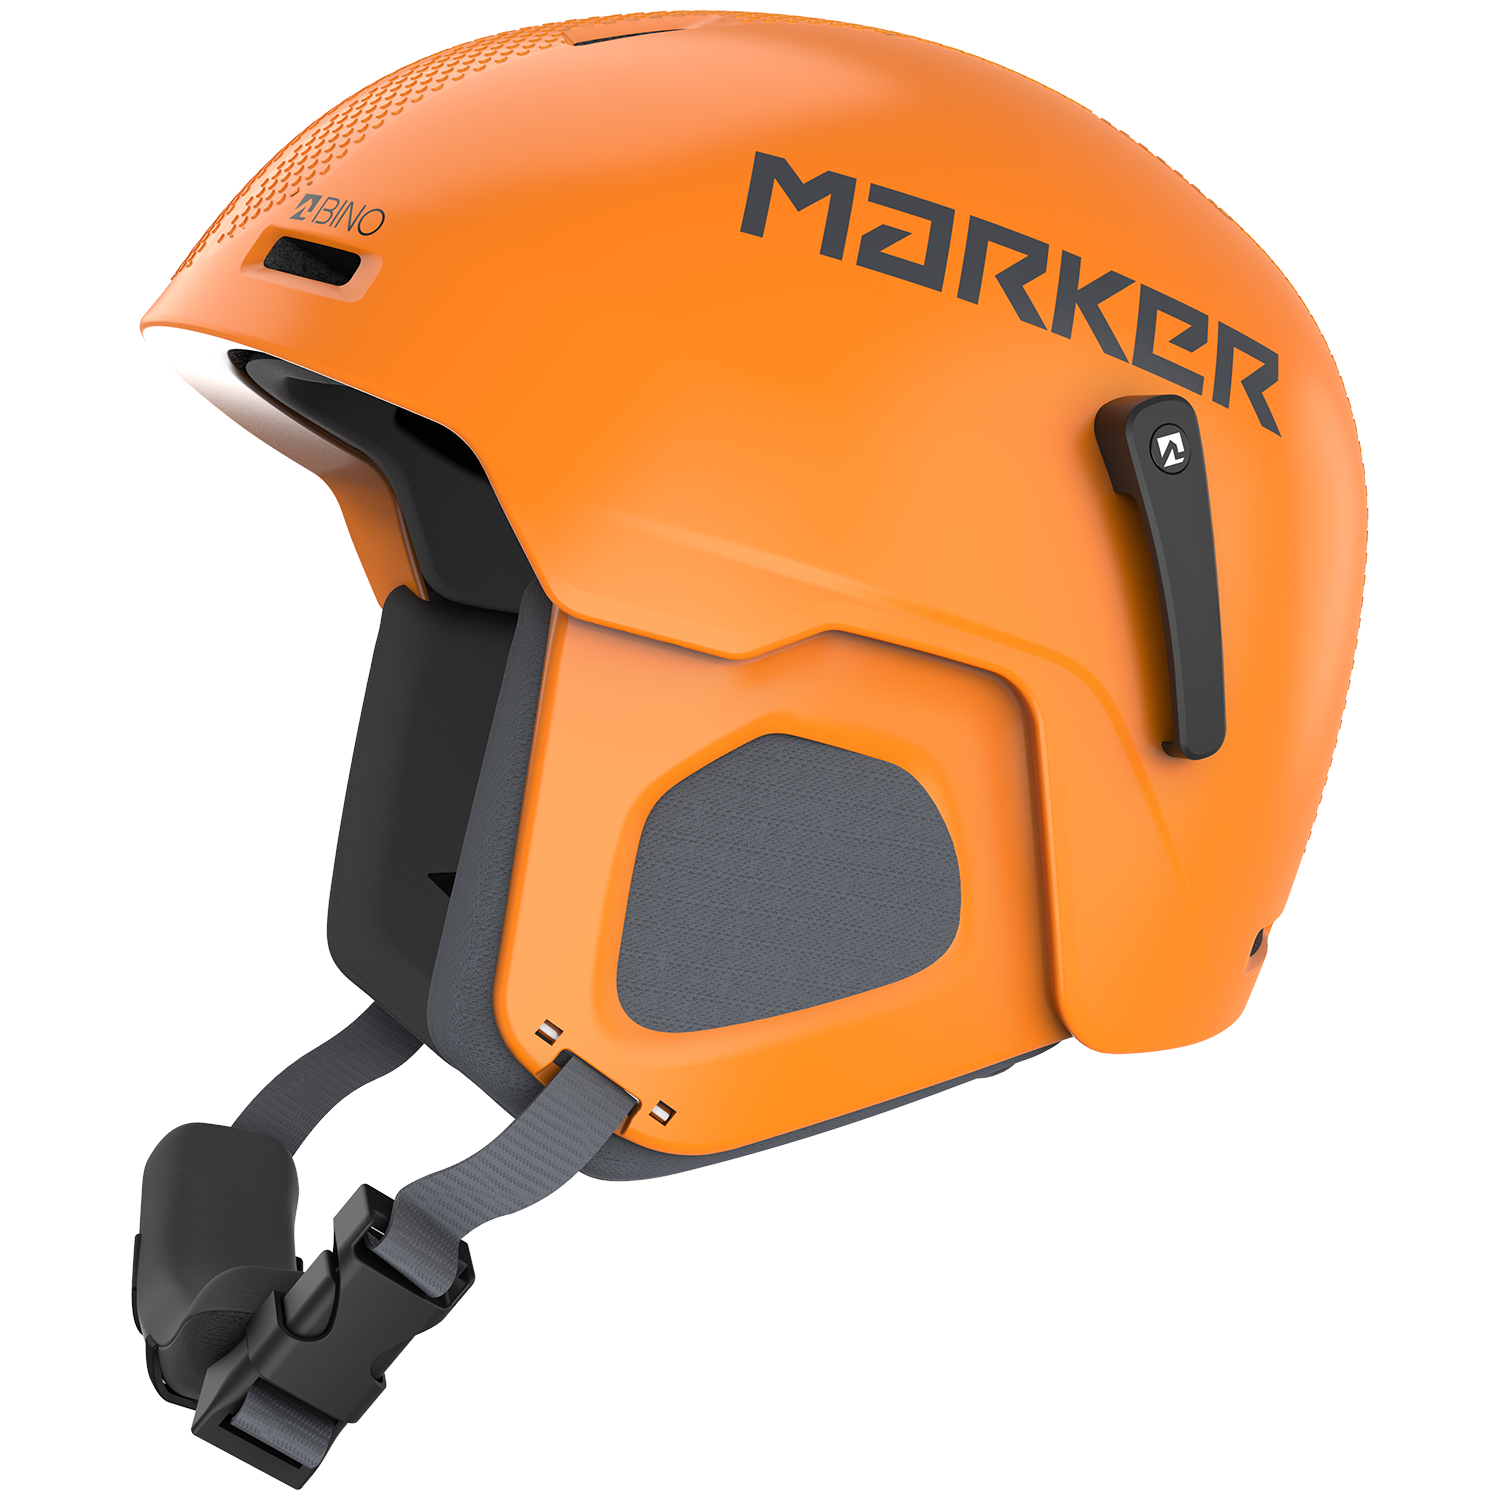 Лыжный шлем Bino Marker, оранжевый